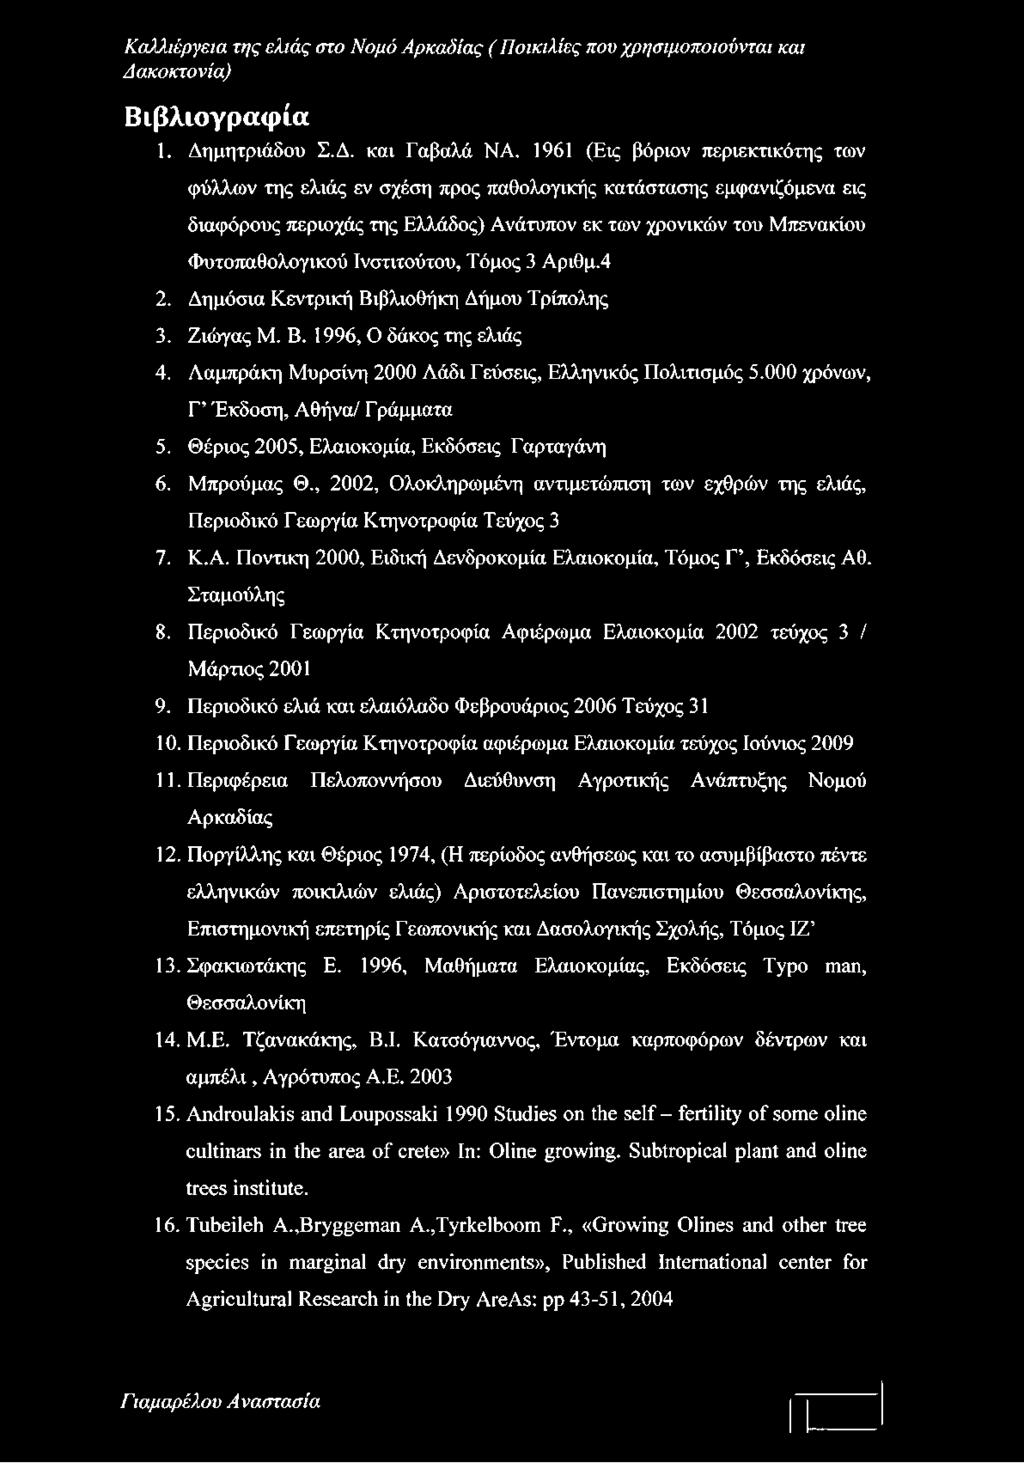 Ινστιτούτου, Τόμος 3 Αριθμ.4 2. Δημόσια Κεντρική Βιβλιοθήκη Δήμου Τρίπολης 3. Ζιώγας Μ. Β. 1996, Ο δάκος της ελιάς 4. Λαμπράκη Μυρσίνη 2000 Λάδι Εεύσεις, Ελληνικός Πολιτισμός 5.